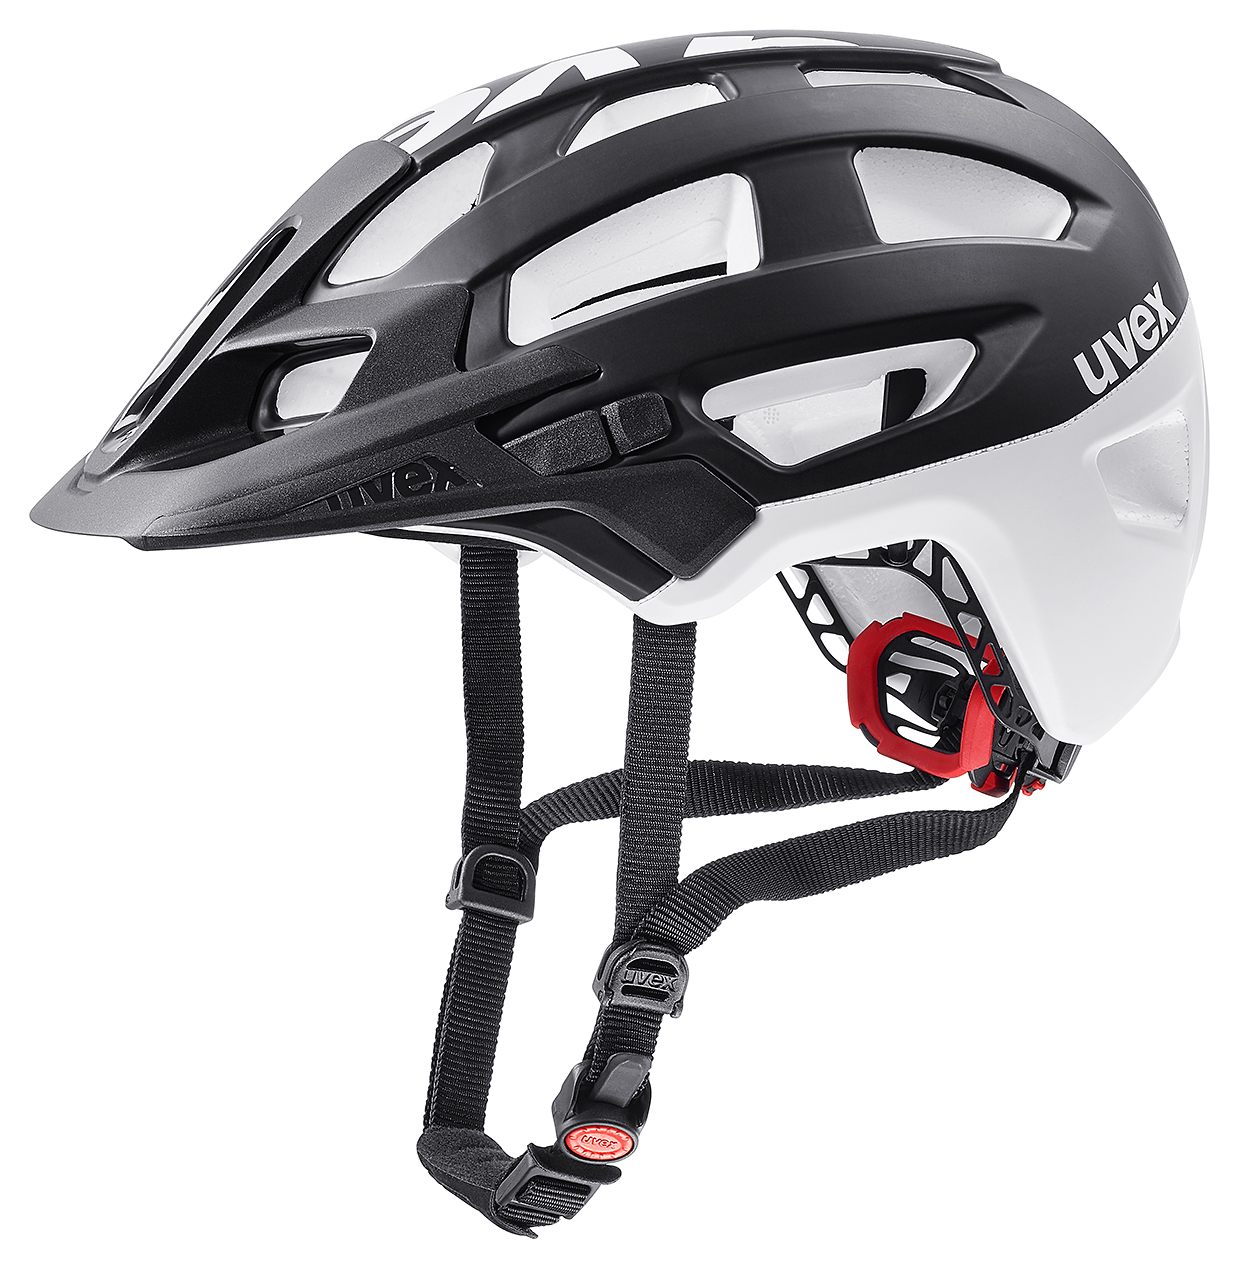 Uvex Finale MTB Fahrrad Helm schwarz/weiß 2018 von Top